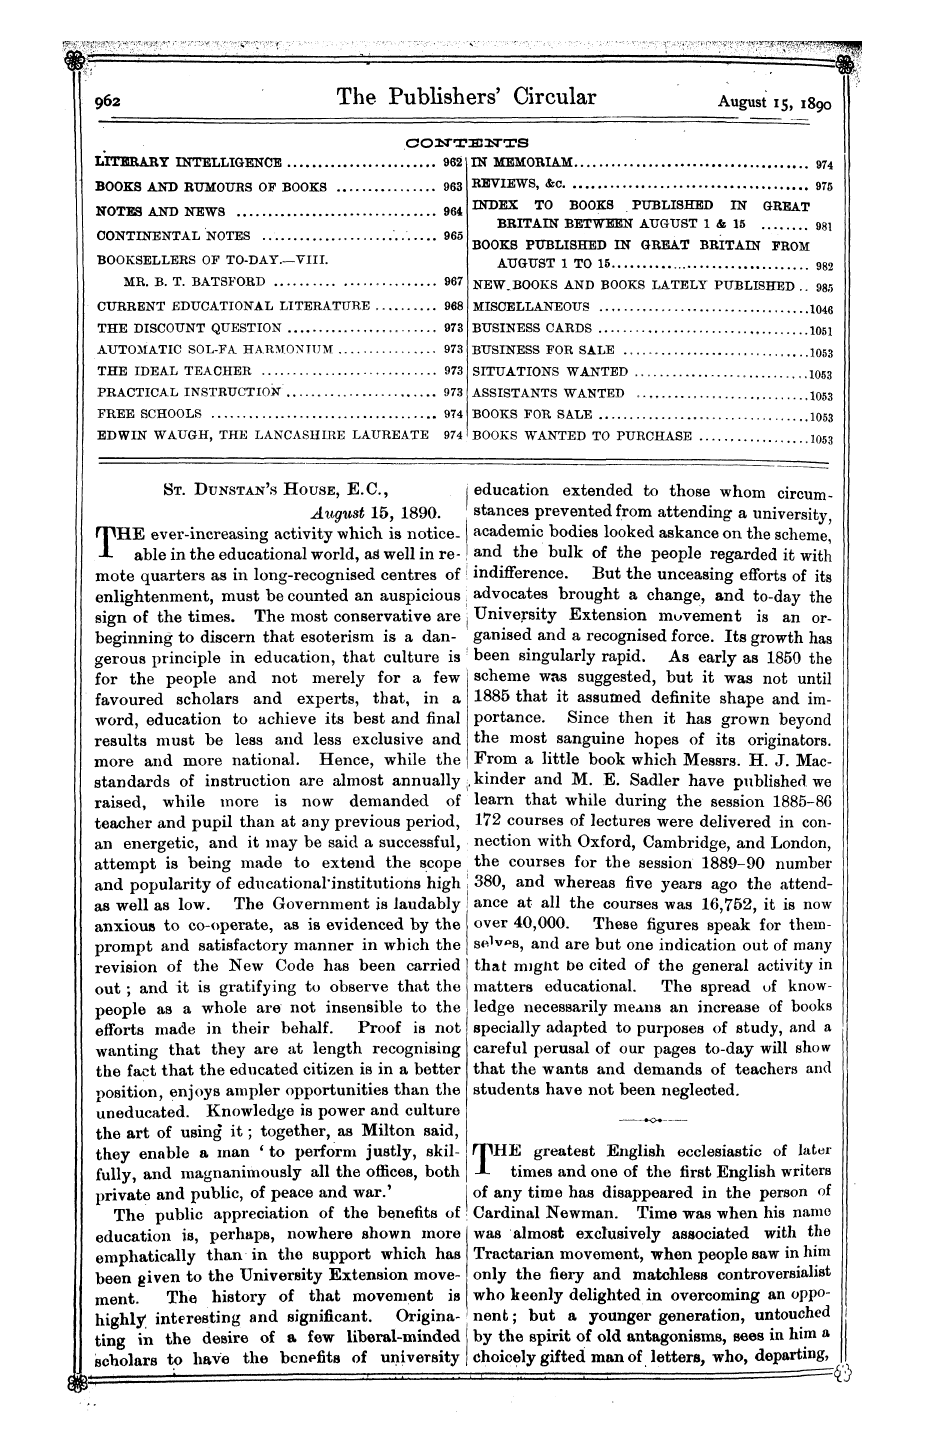 Publishers’ Circular (1880-1890): jS F Y, 1st edition - Ar00400